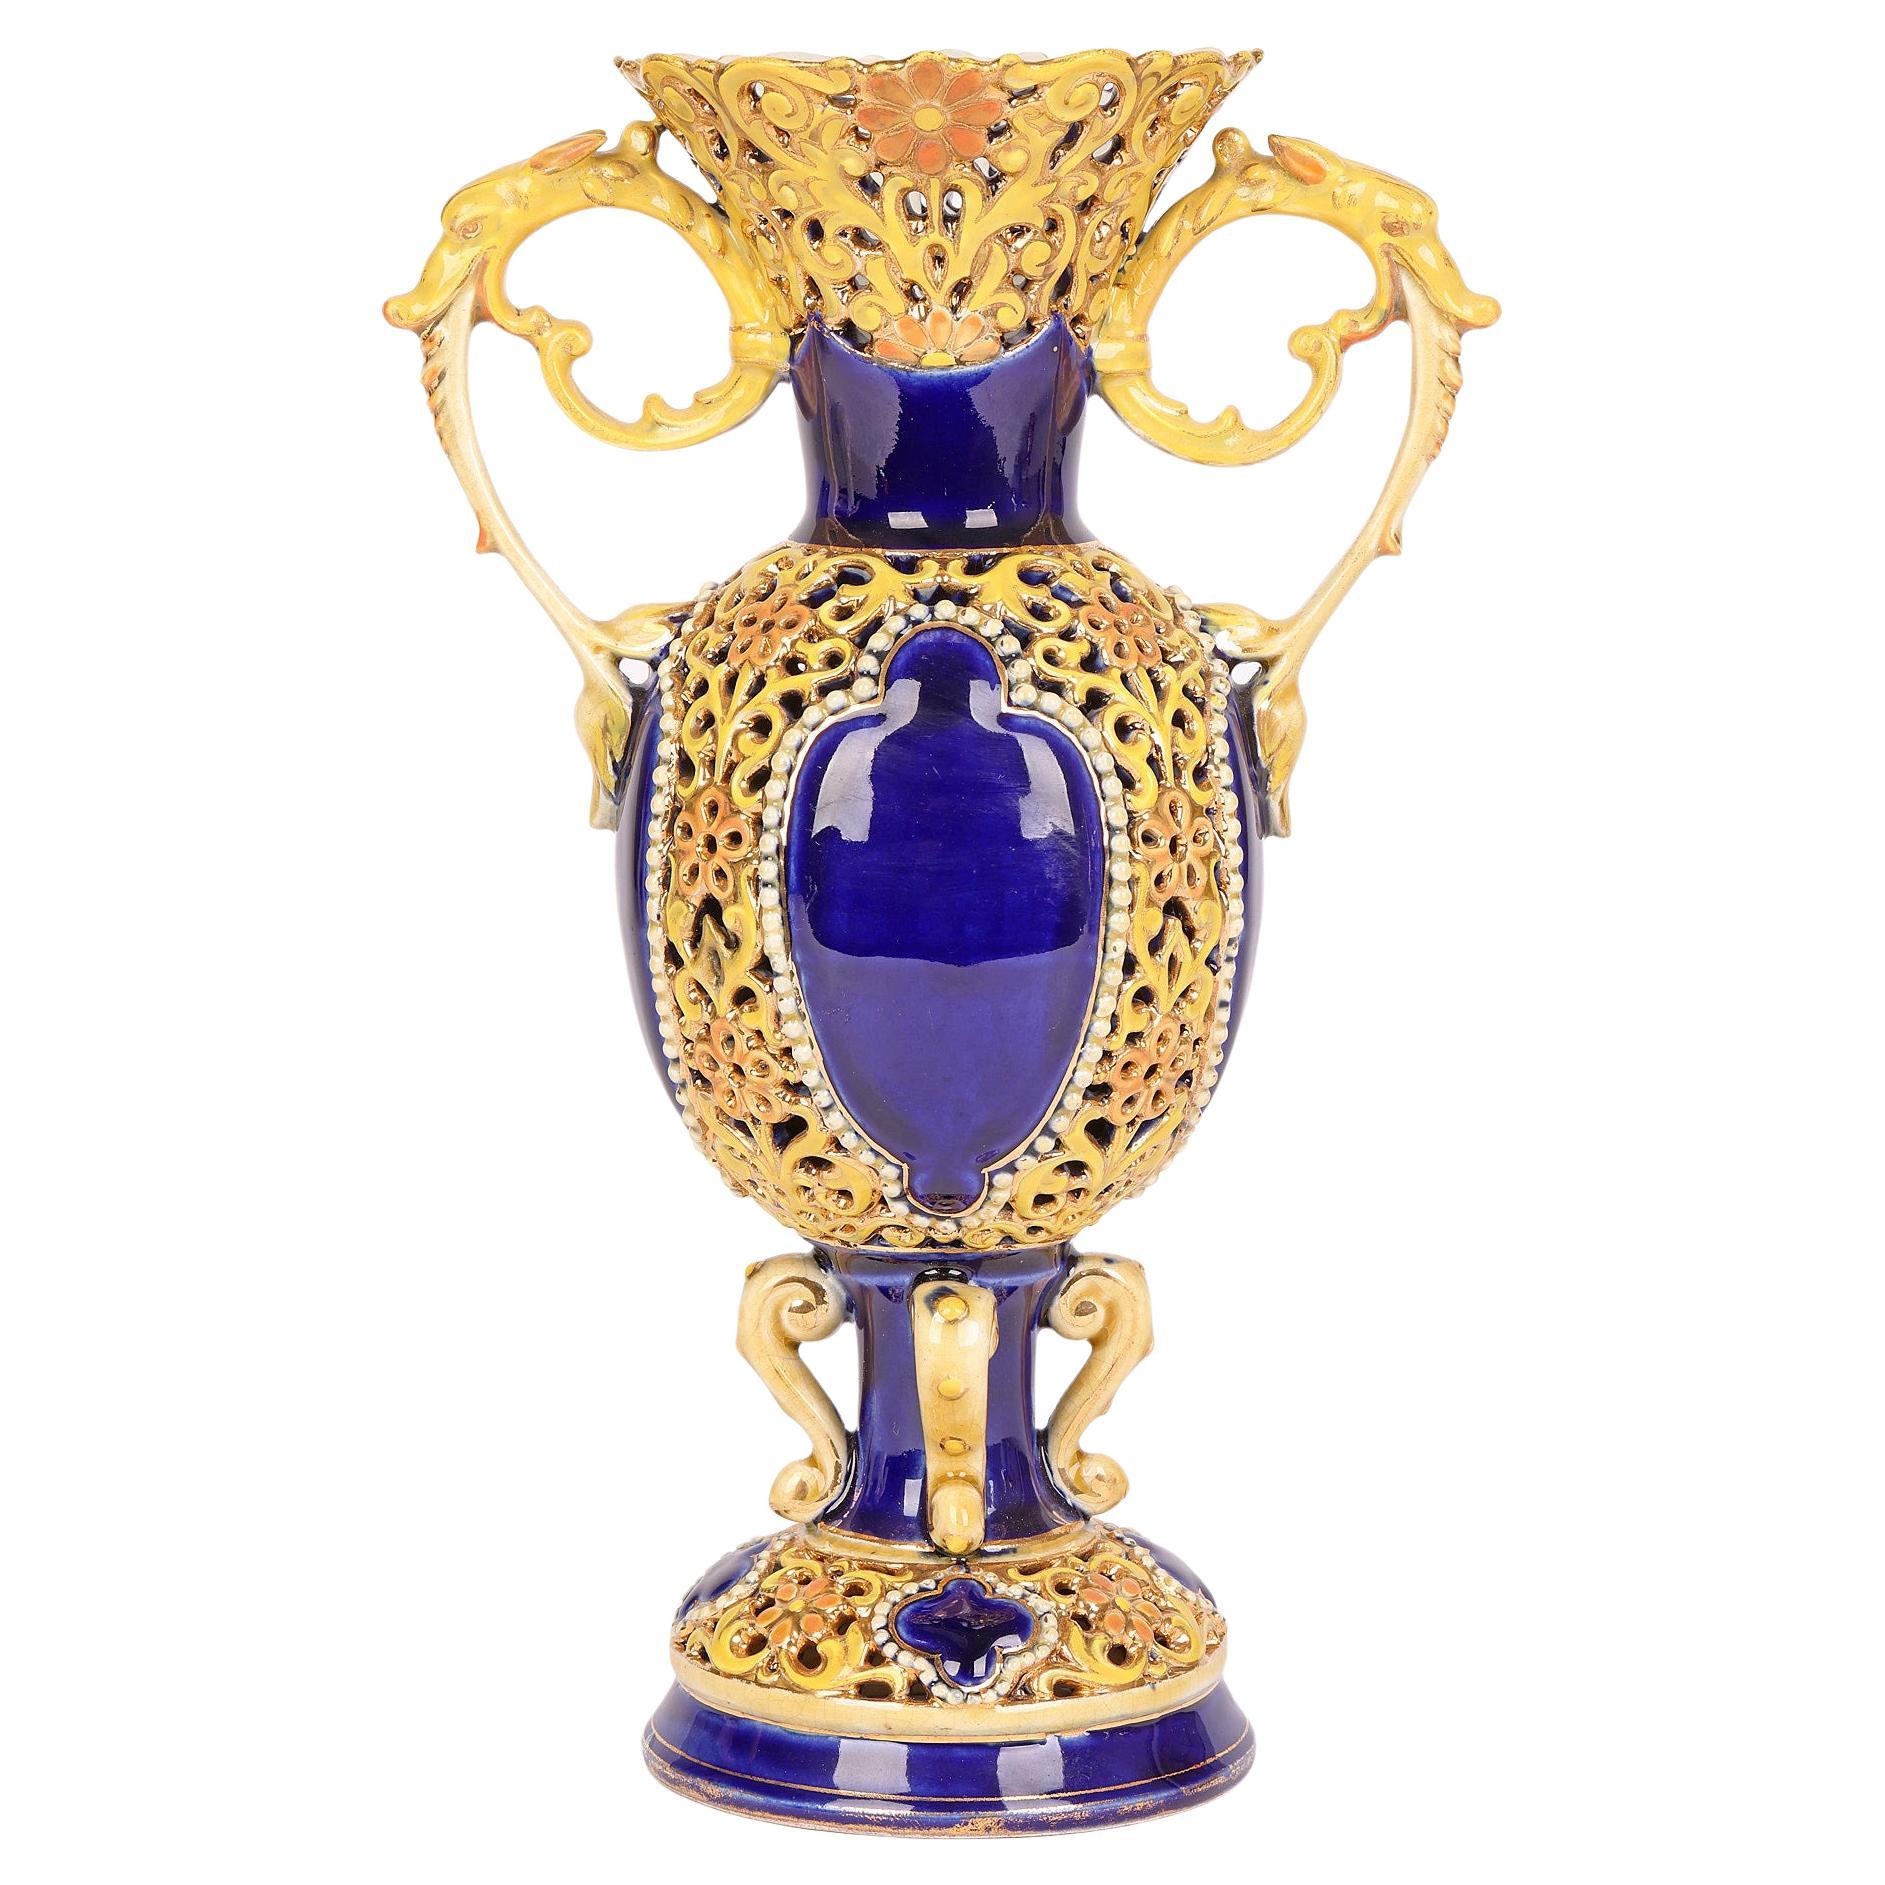 Zsolnay vase hongrois en porcelaine réticulée à motifs floraux avec panneaux bleu cobalt